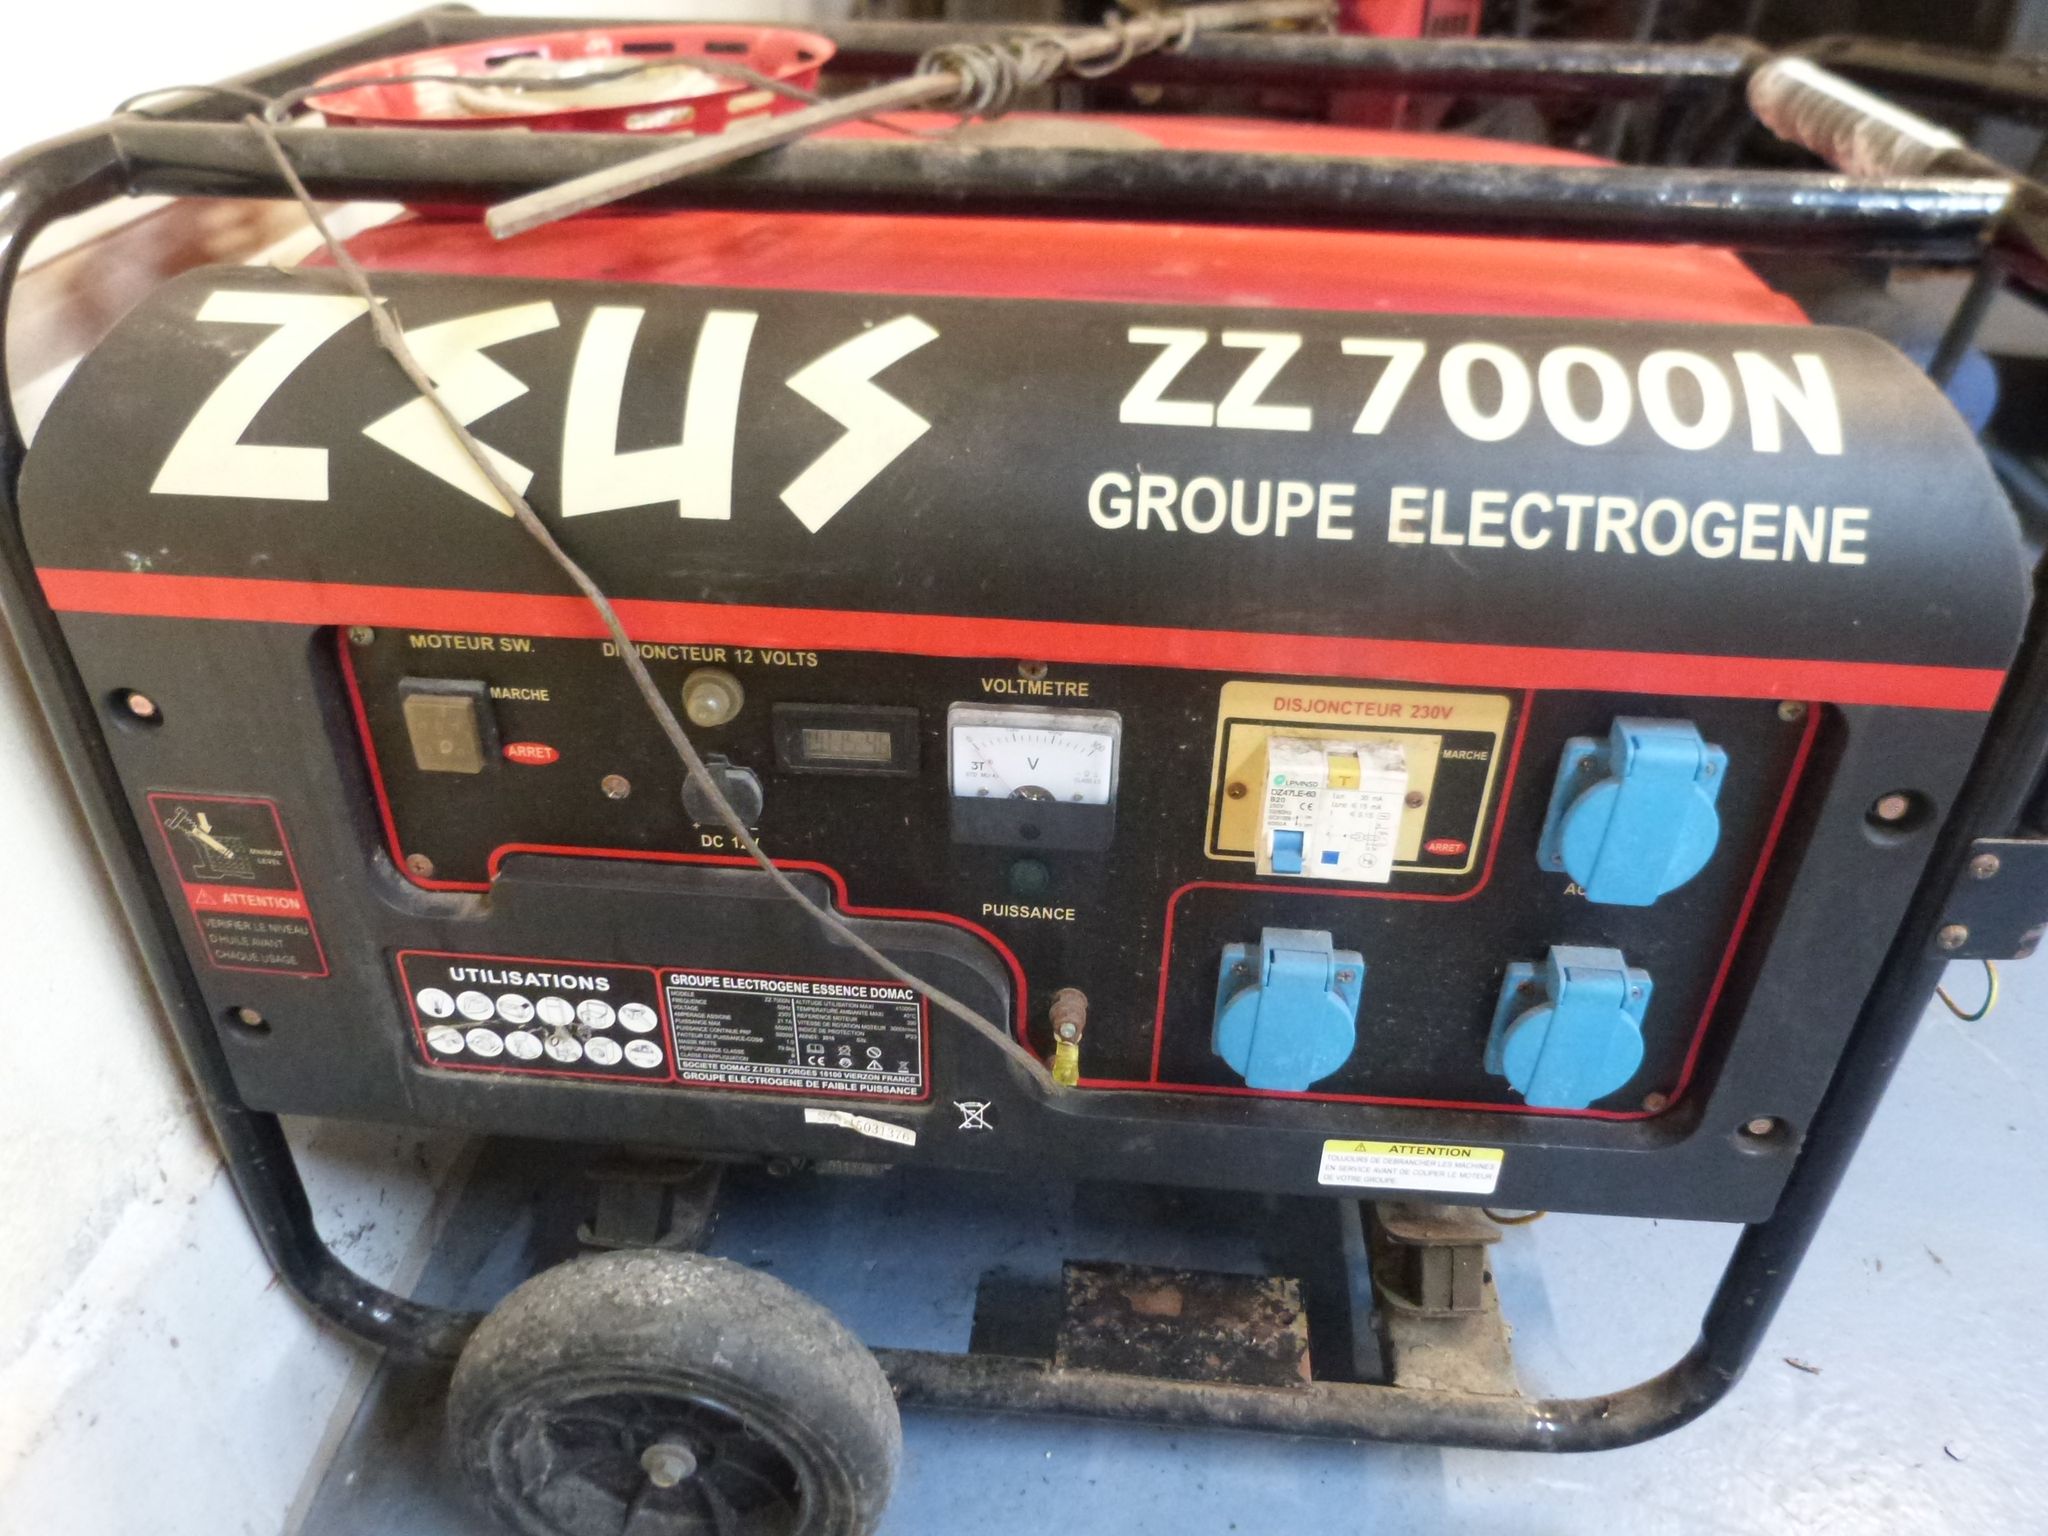 Groupe électrogène Inverter Zeus 2600I - Mr.Bricolage Martinique